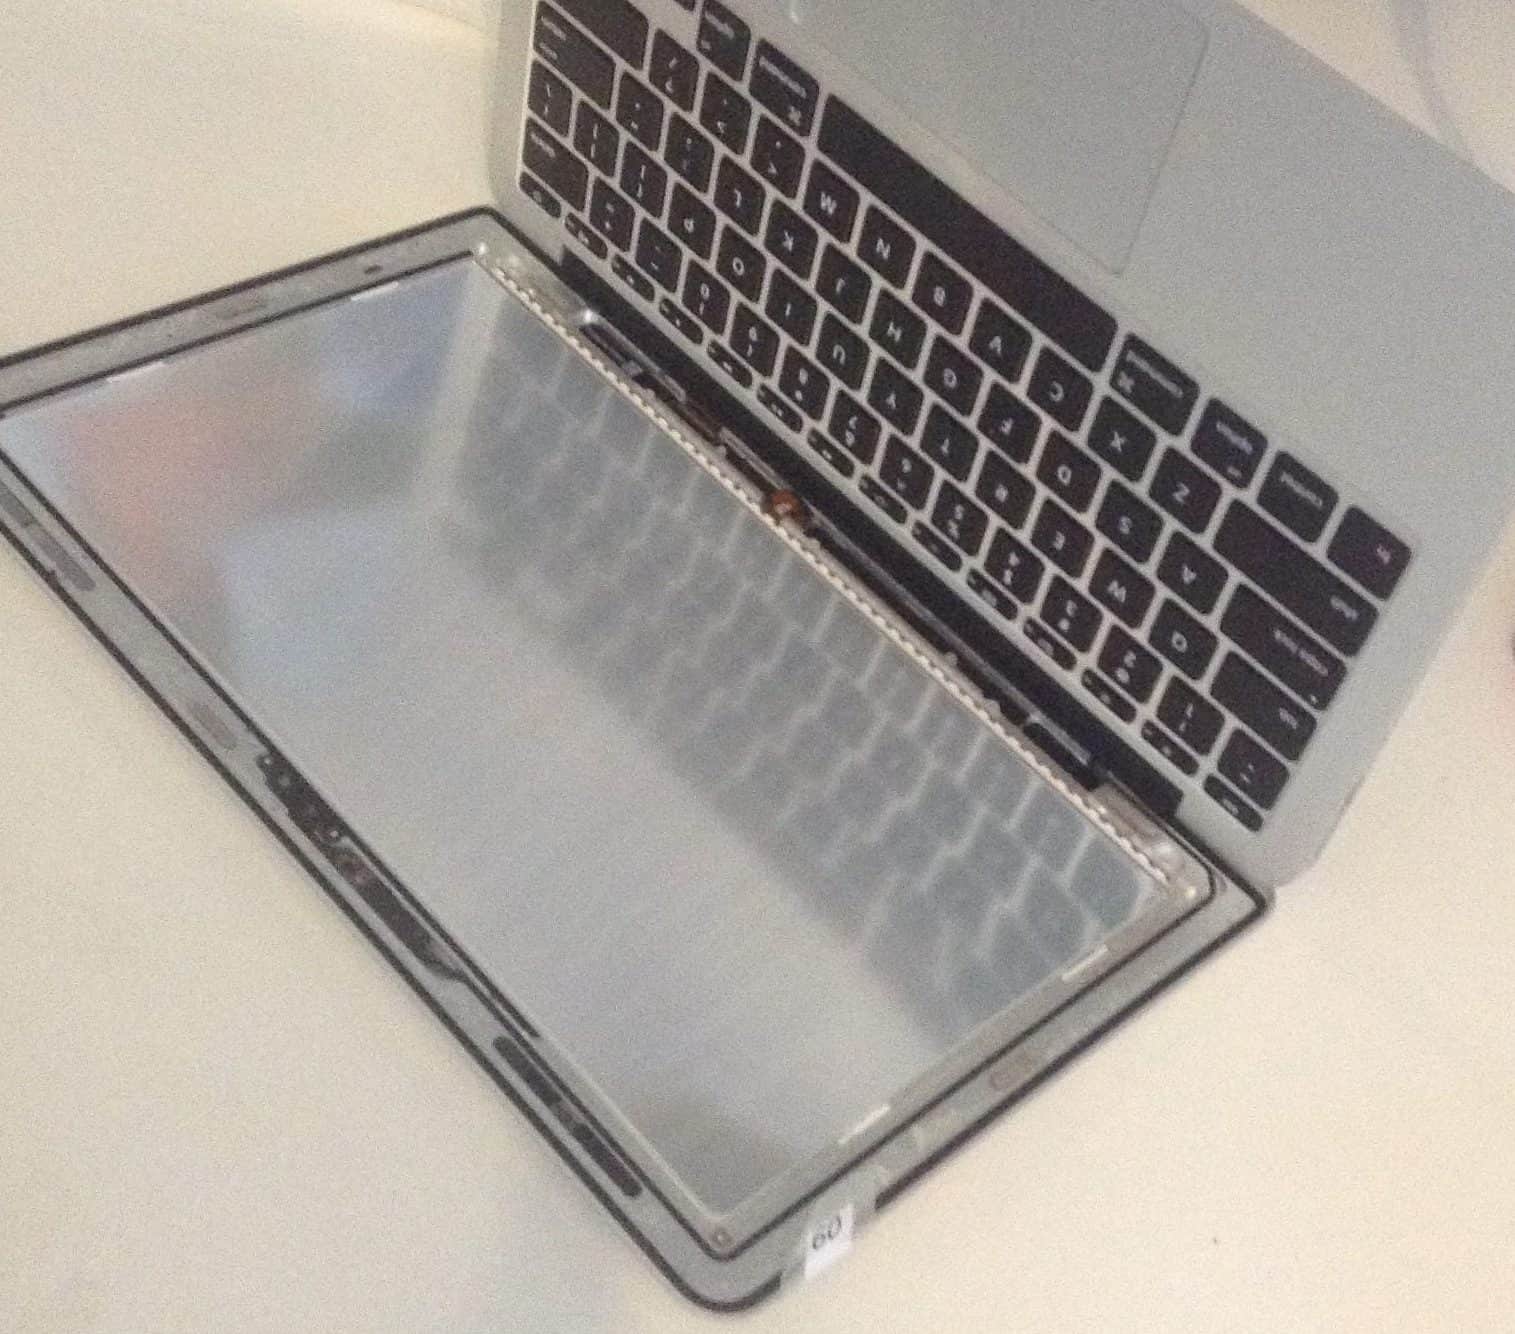 MacBook Air Disassembled for repair